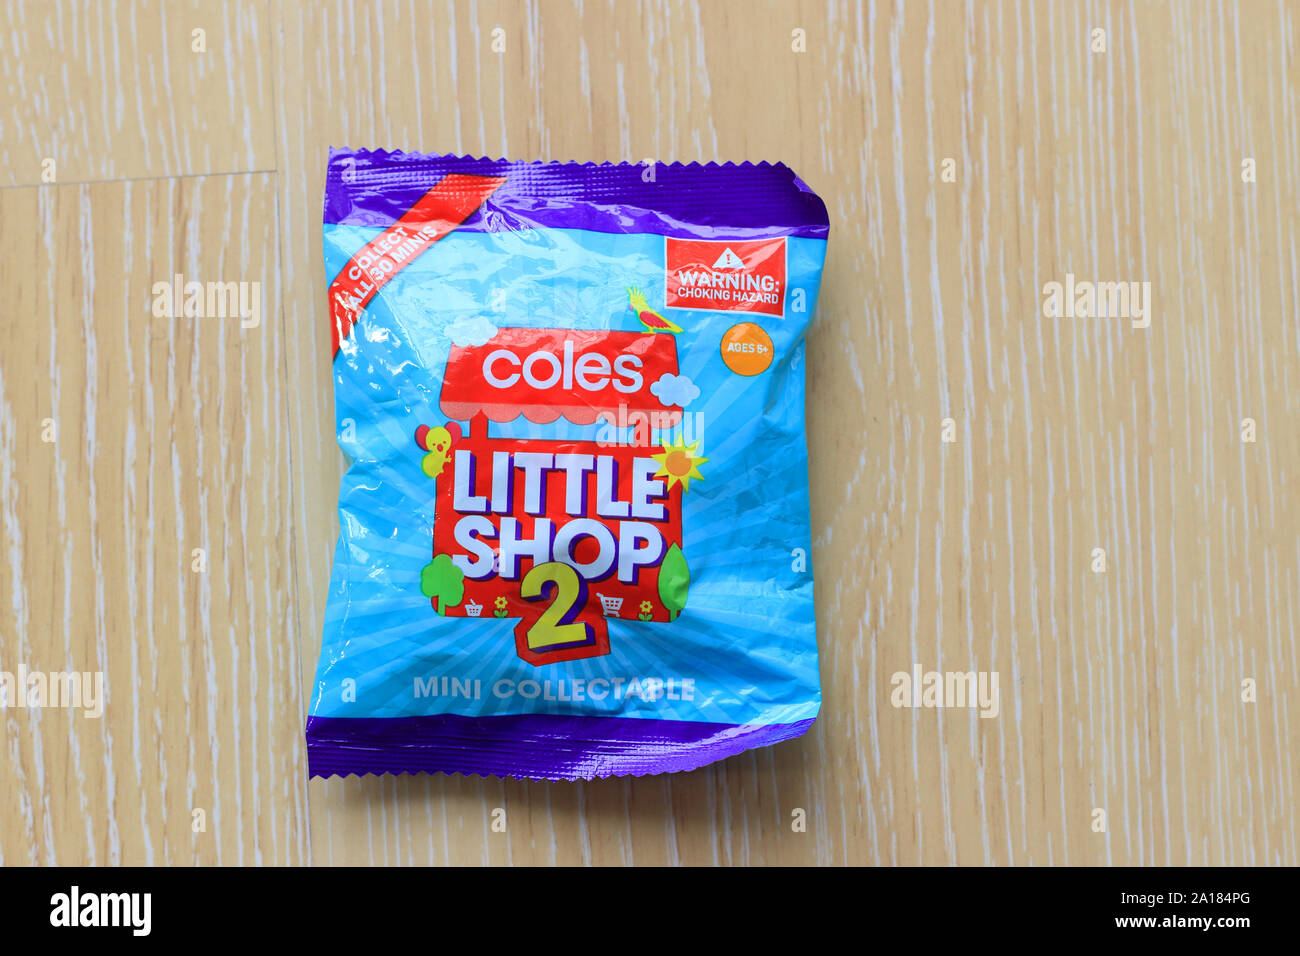 Coles Little Shop 2 Mini Collectables Stock Photo